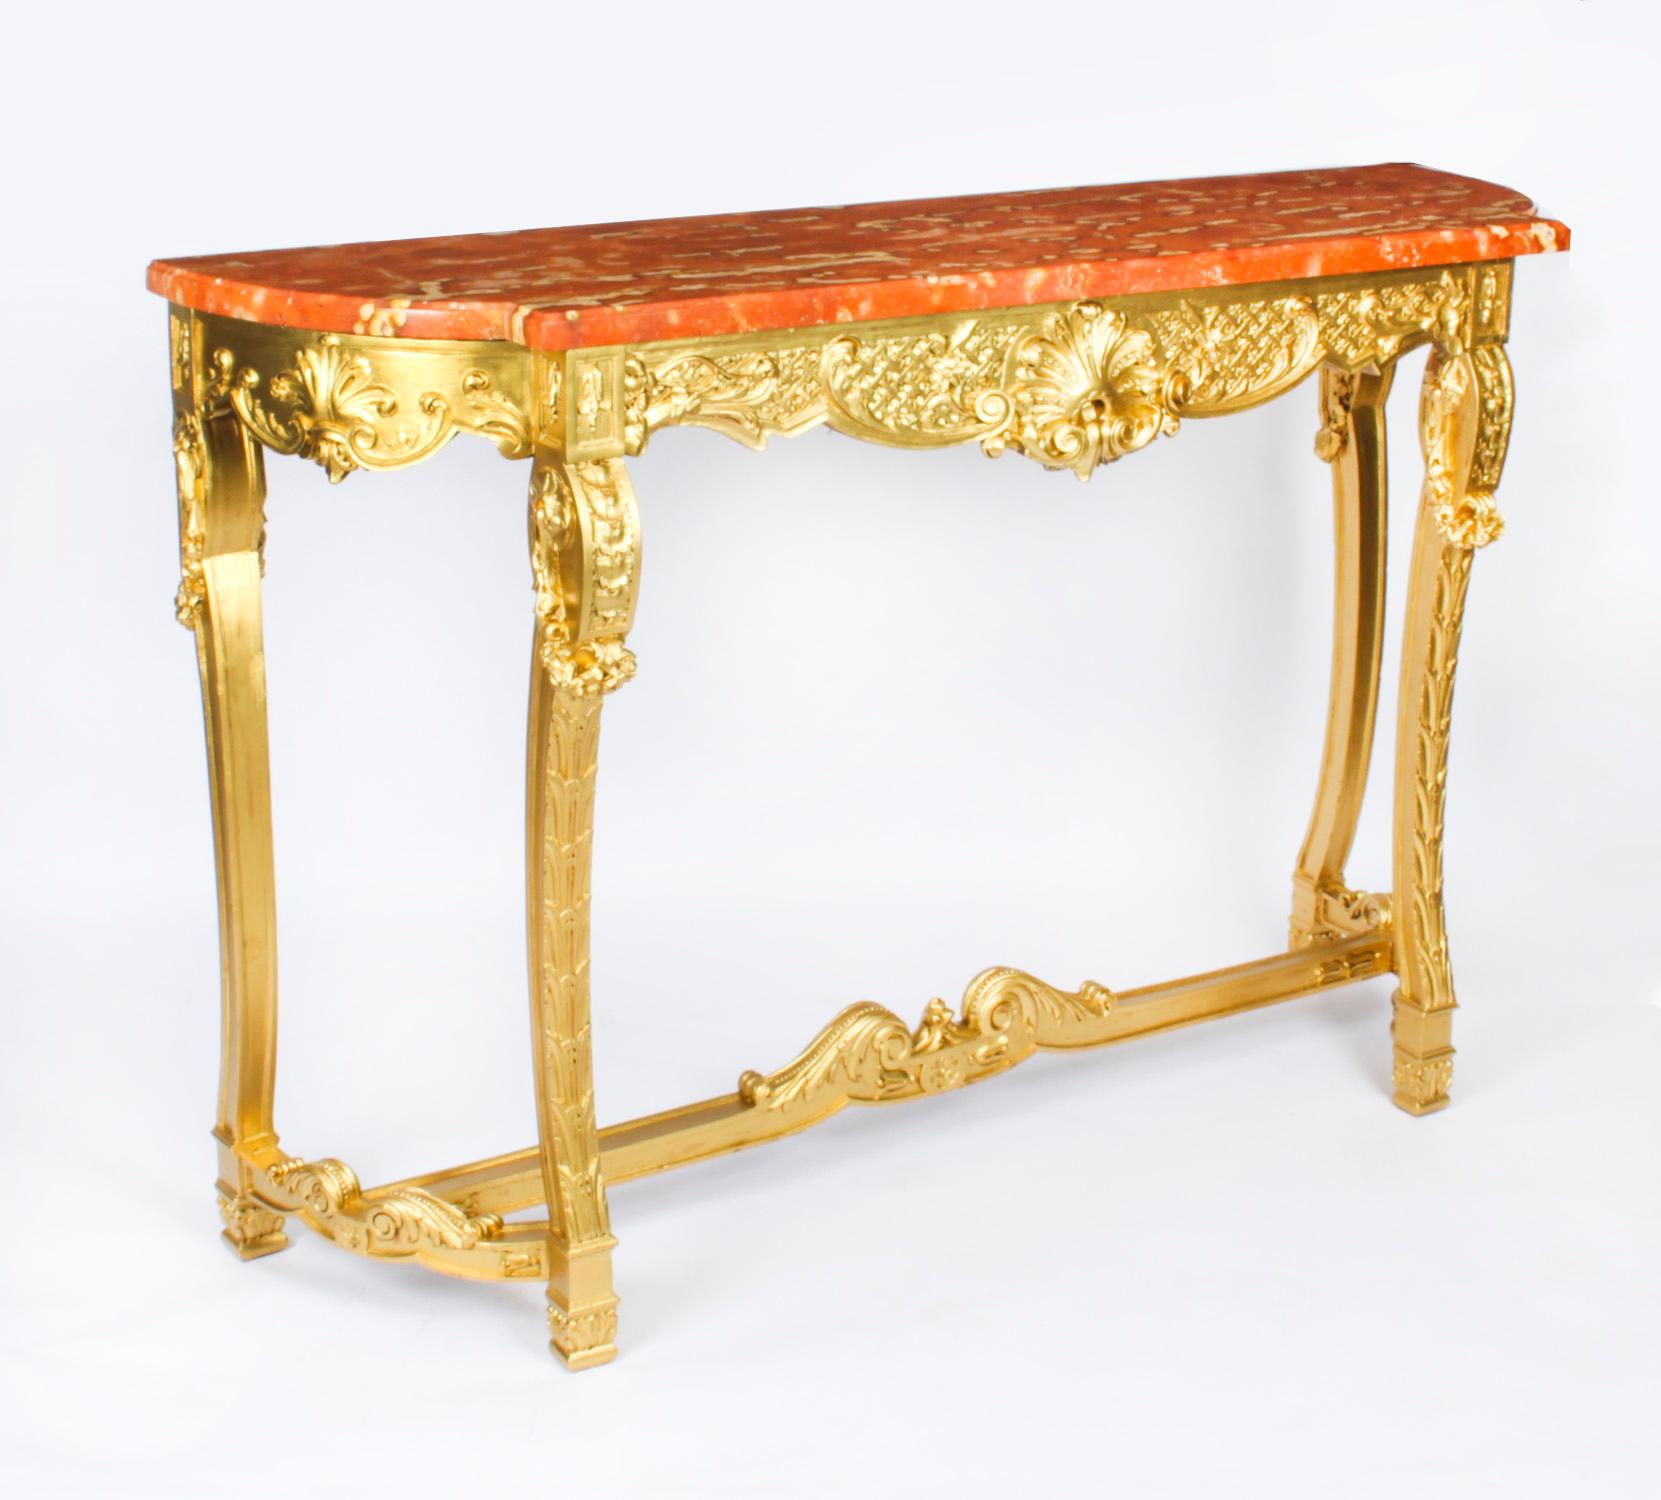 Il s'agit d'une monumentale et élégante console française en bois doré sculpté de style Louis XVIII avec miroir Trumeau assorti, datant d'environ 1820.

La console à plateau en marbre, en bois doré magnifiquement sculpté, présente un plateau en